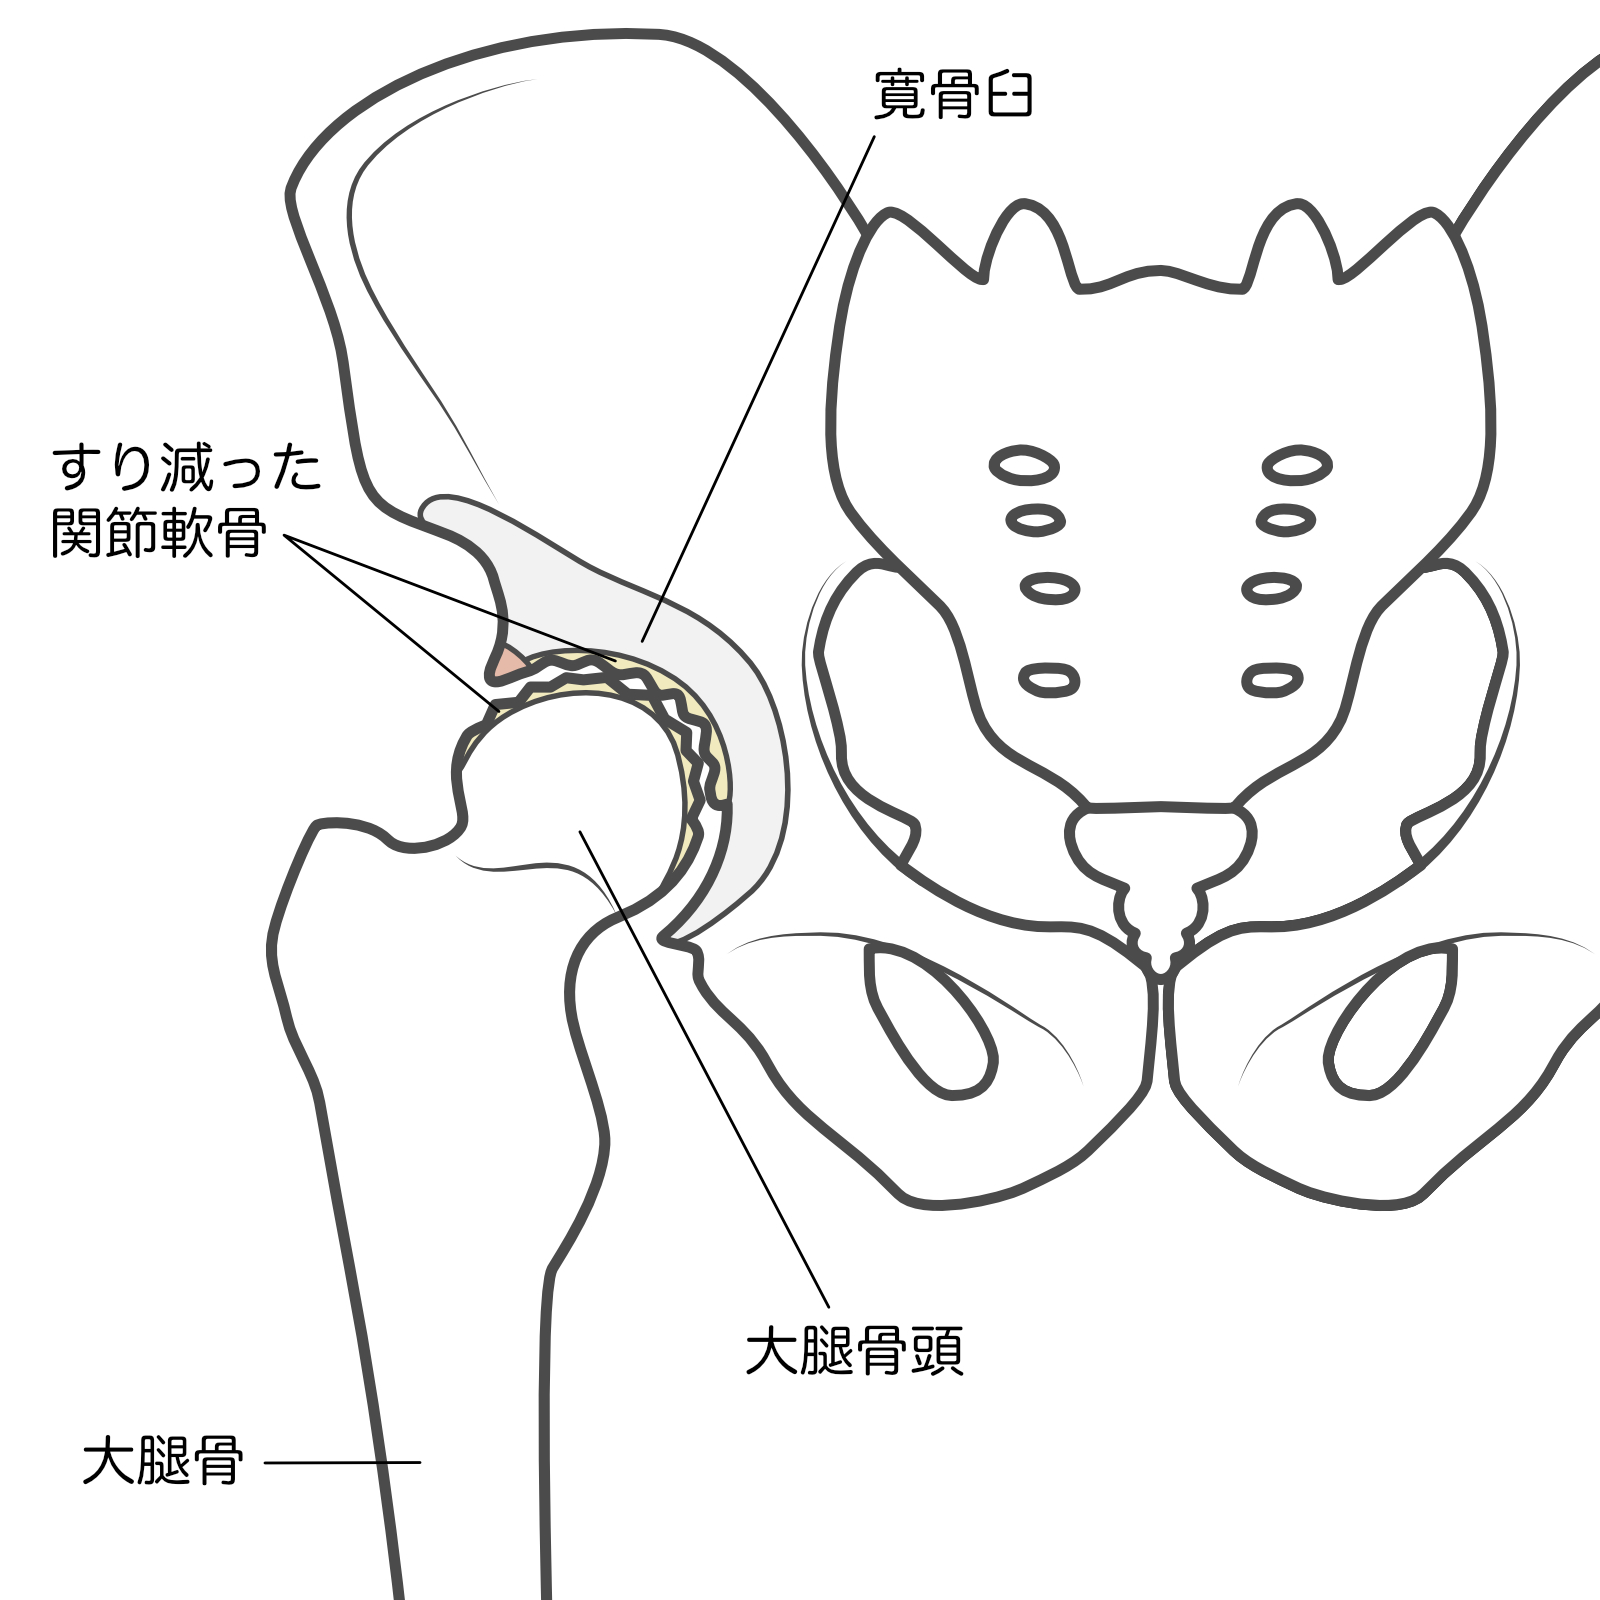 股関節のイメージ